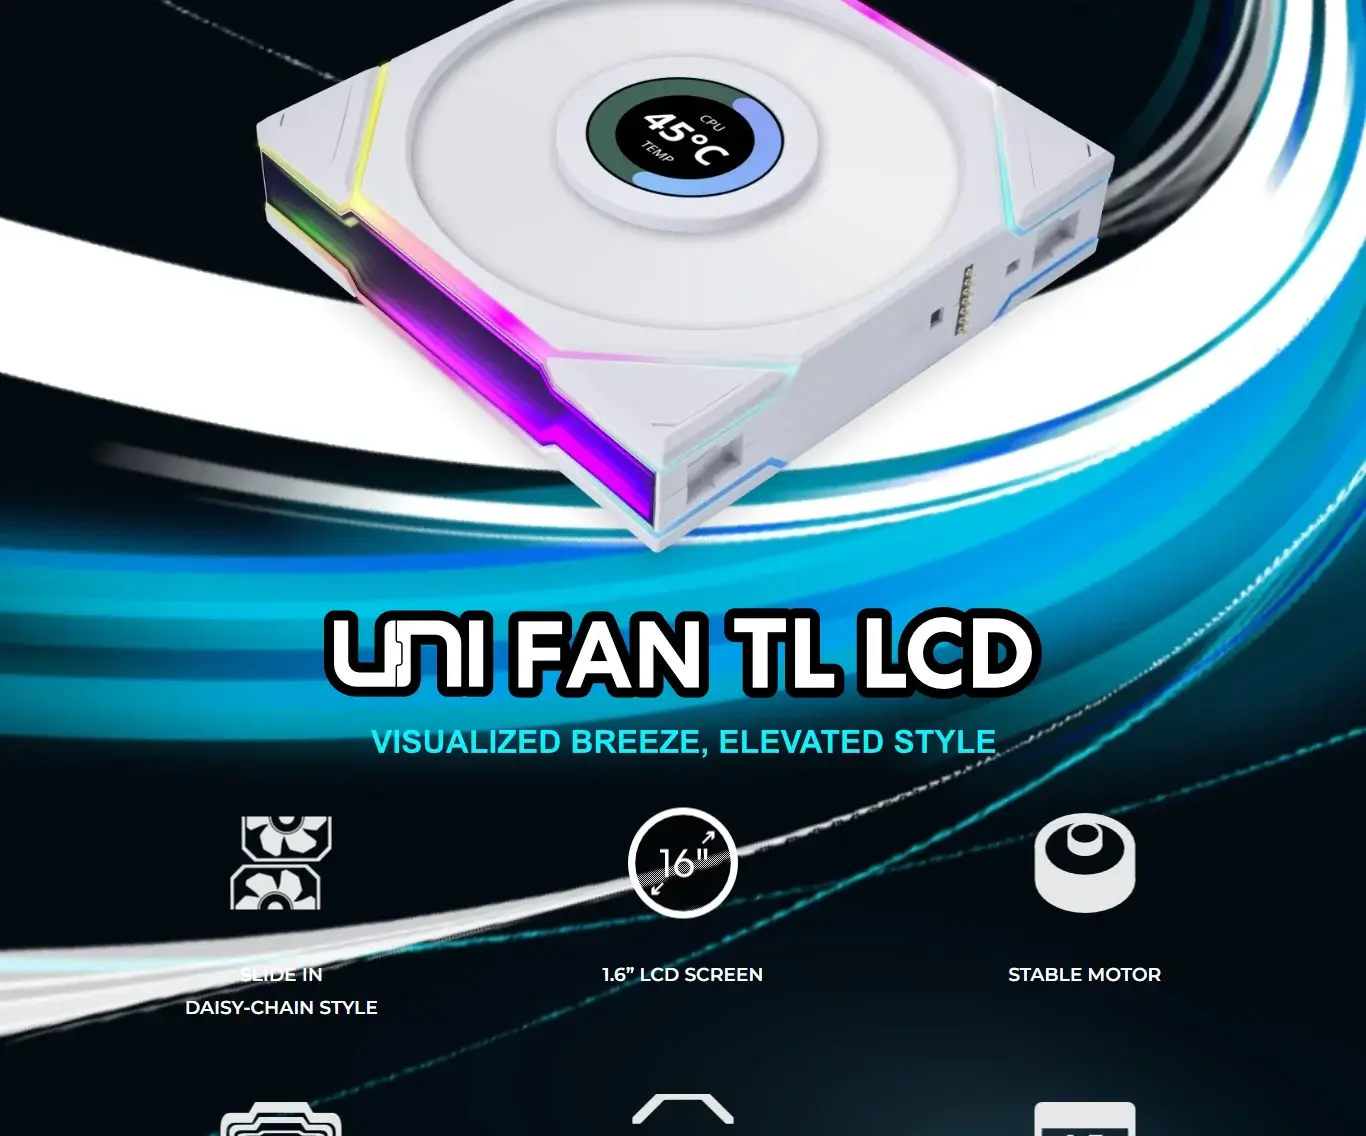 UNI FAN TL LCD